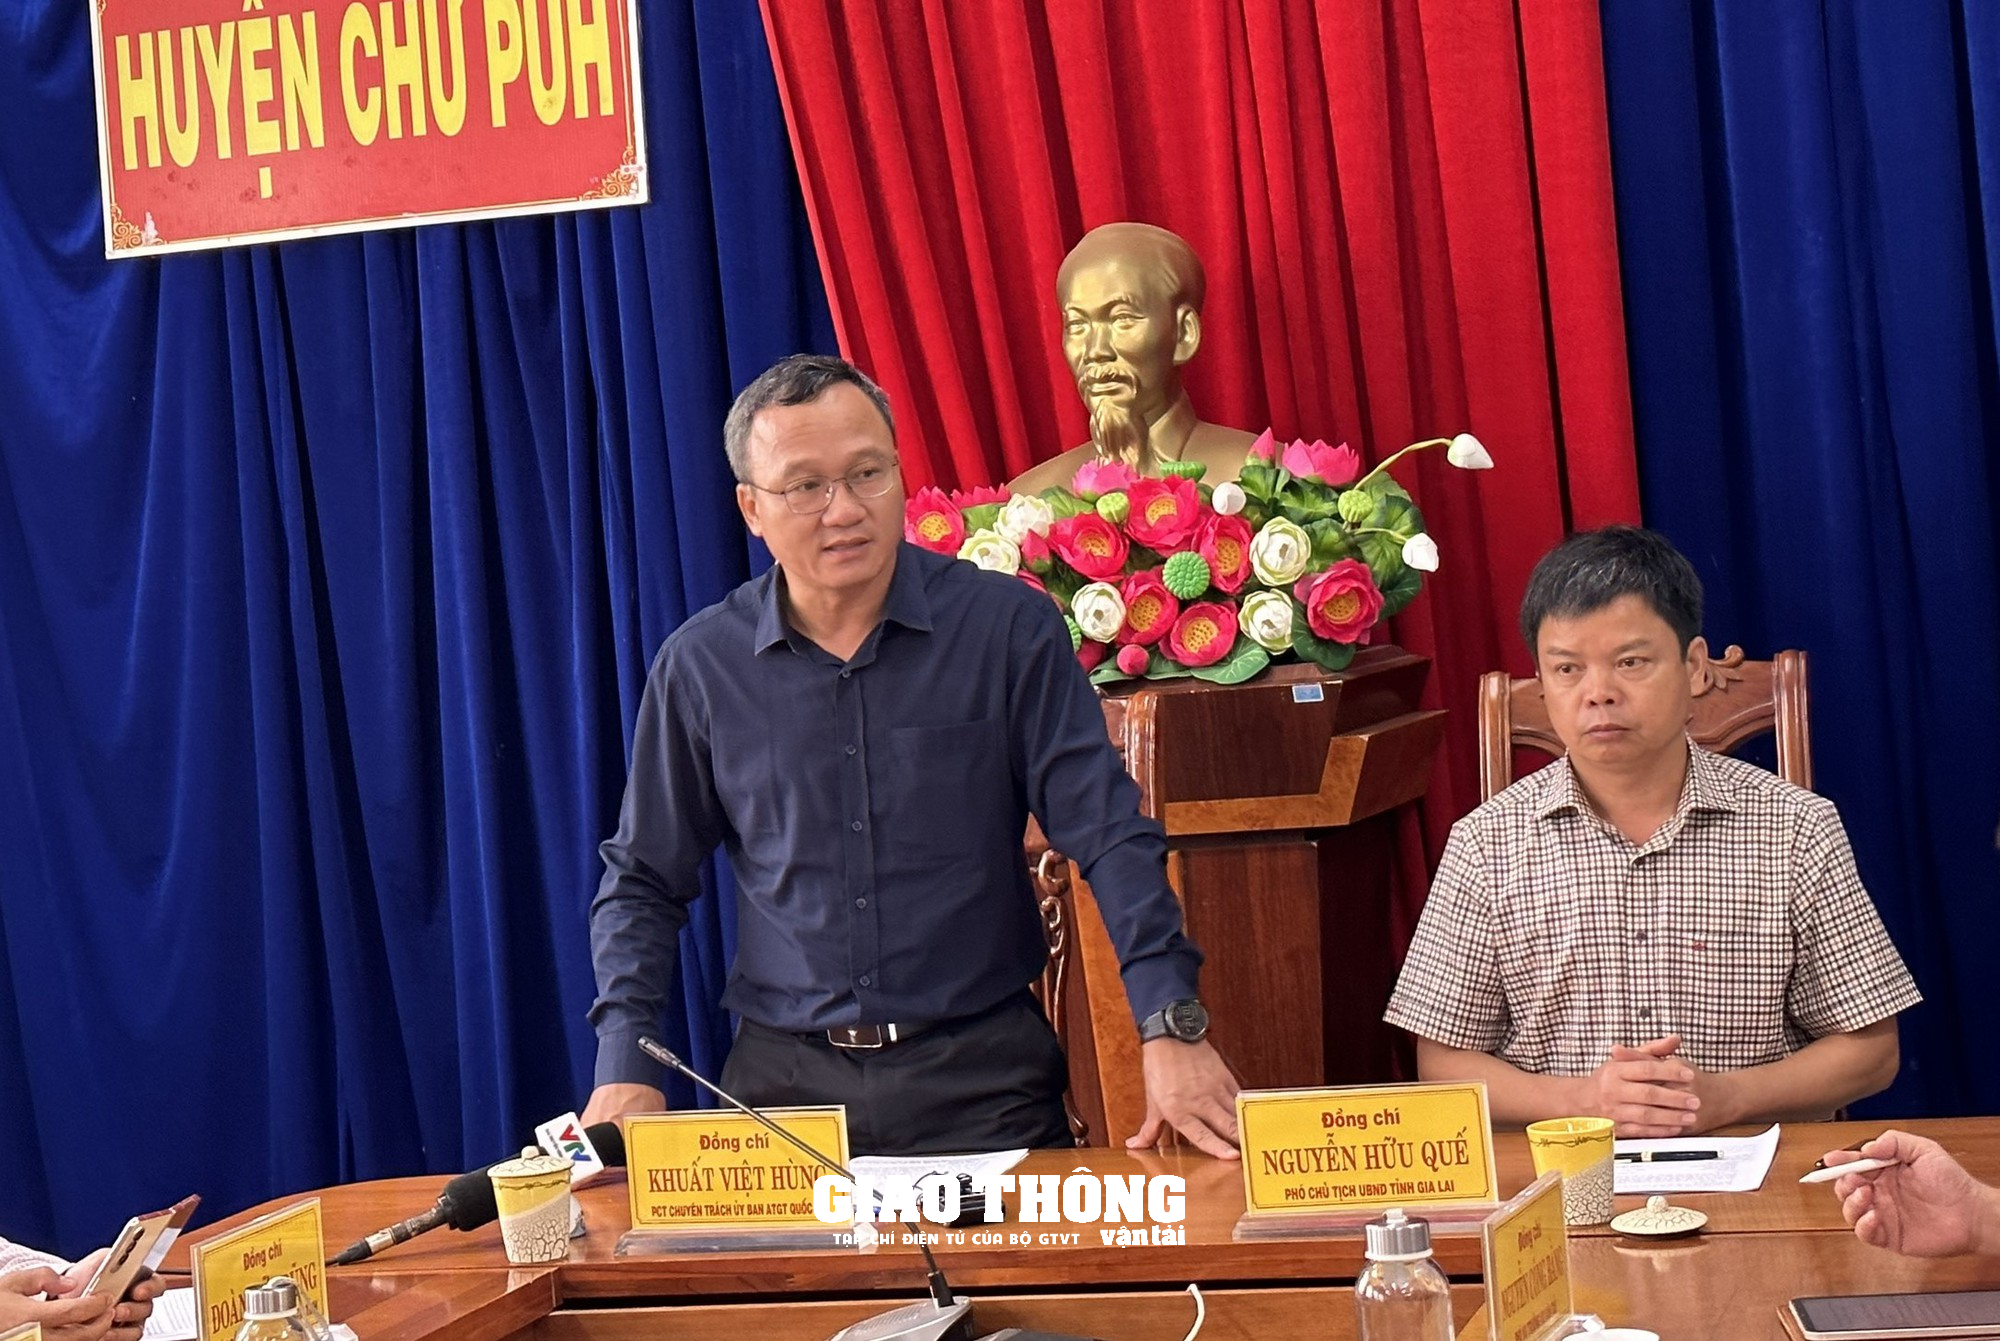 Ông Khuất Việt Hùng kiểm tra hiện trường TNGT 4 người thương vong ở Gia Lai: Tài xế xe ben vượt ẩu - Ảnh 5.